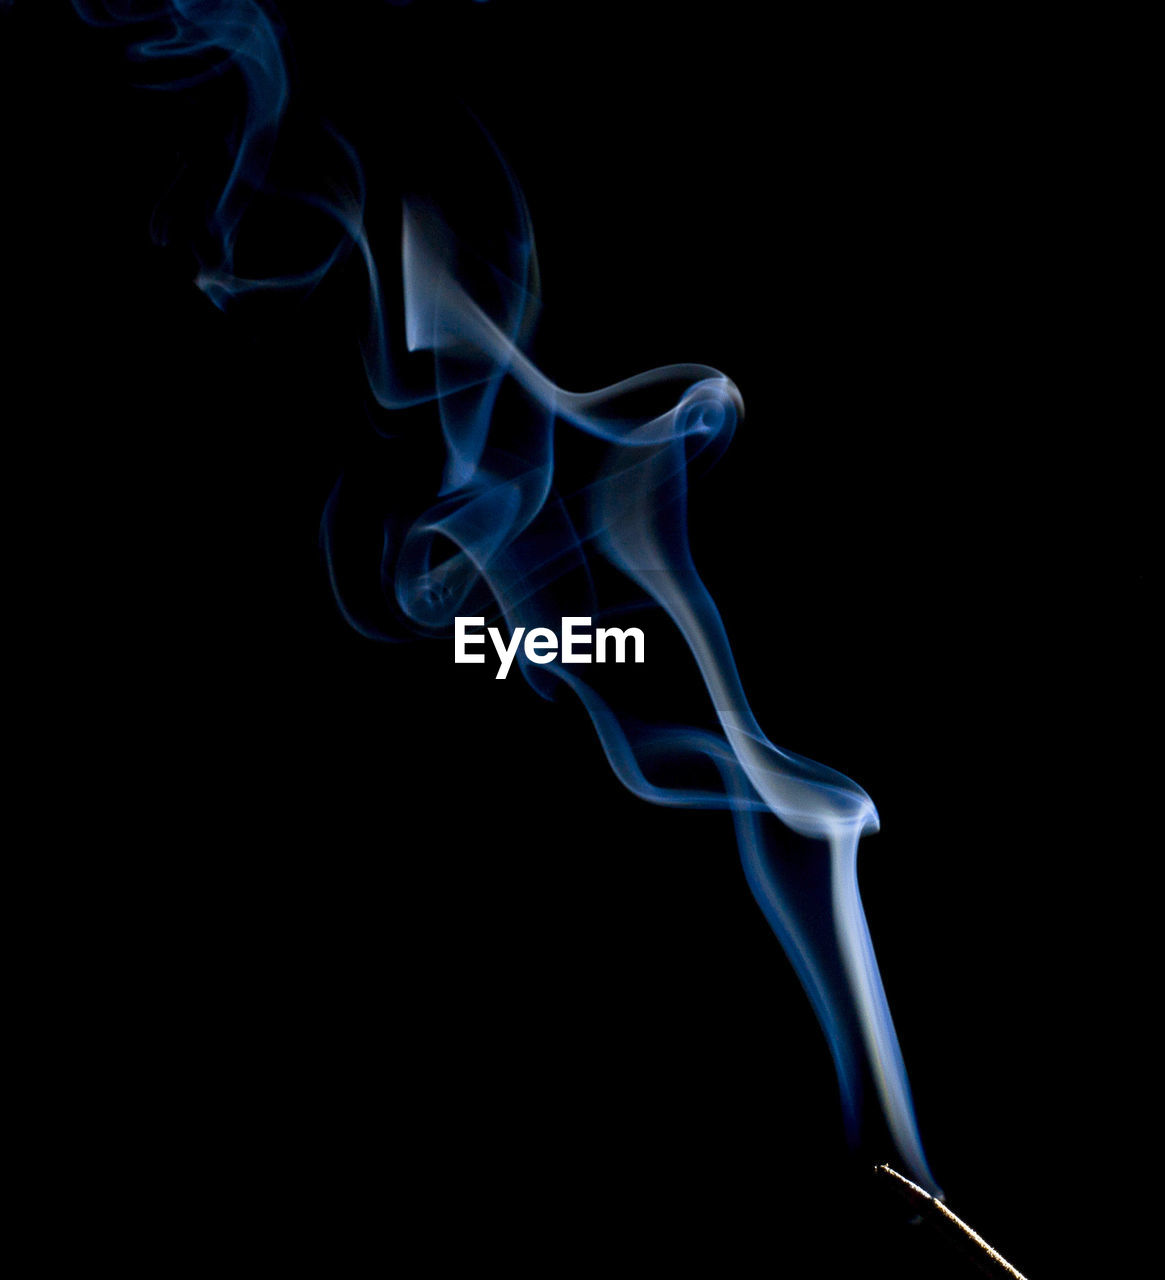 Incense stick emitting smoke against black background